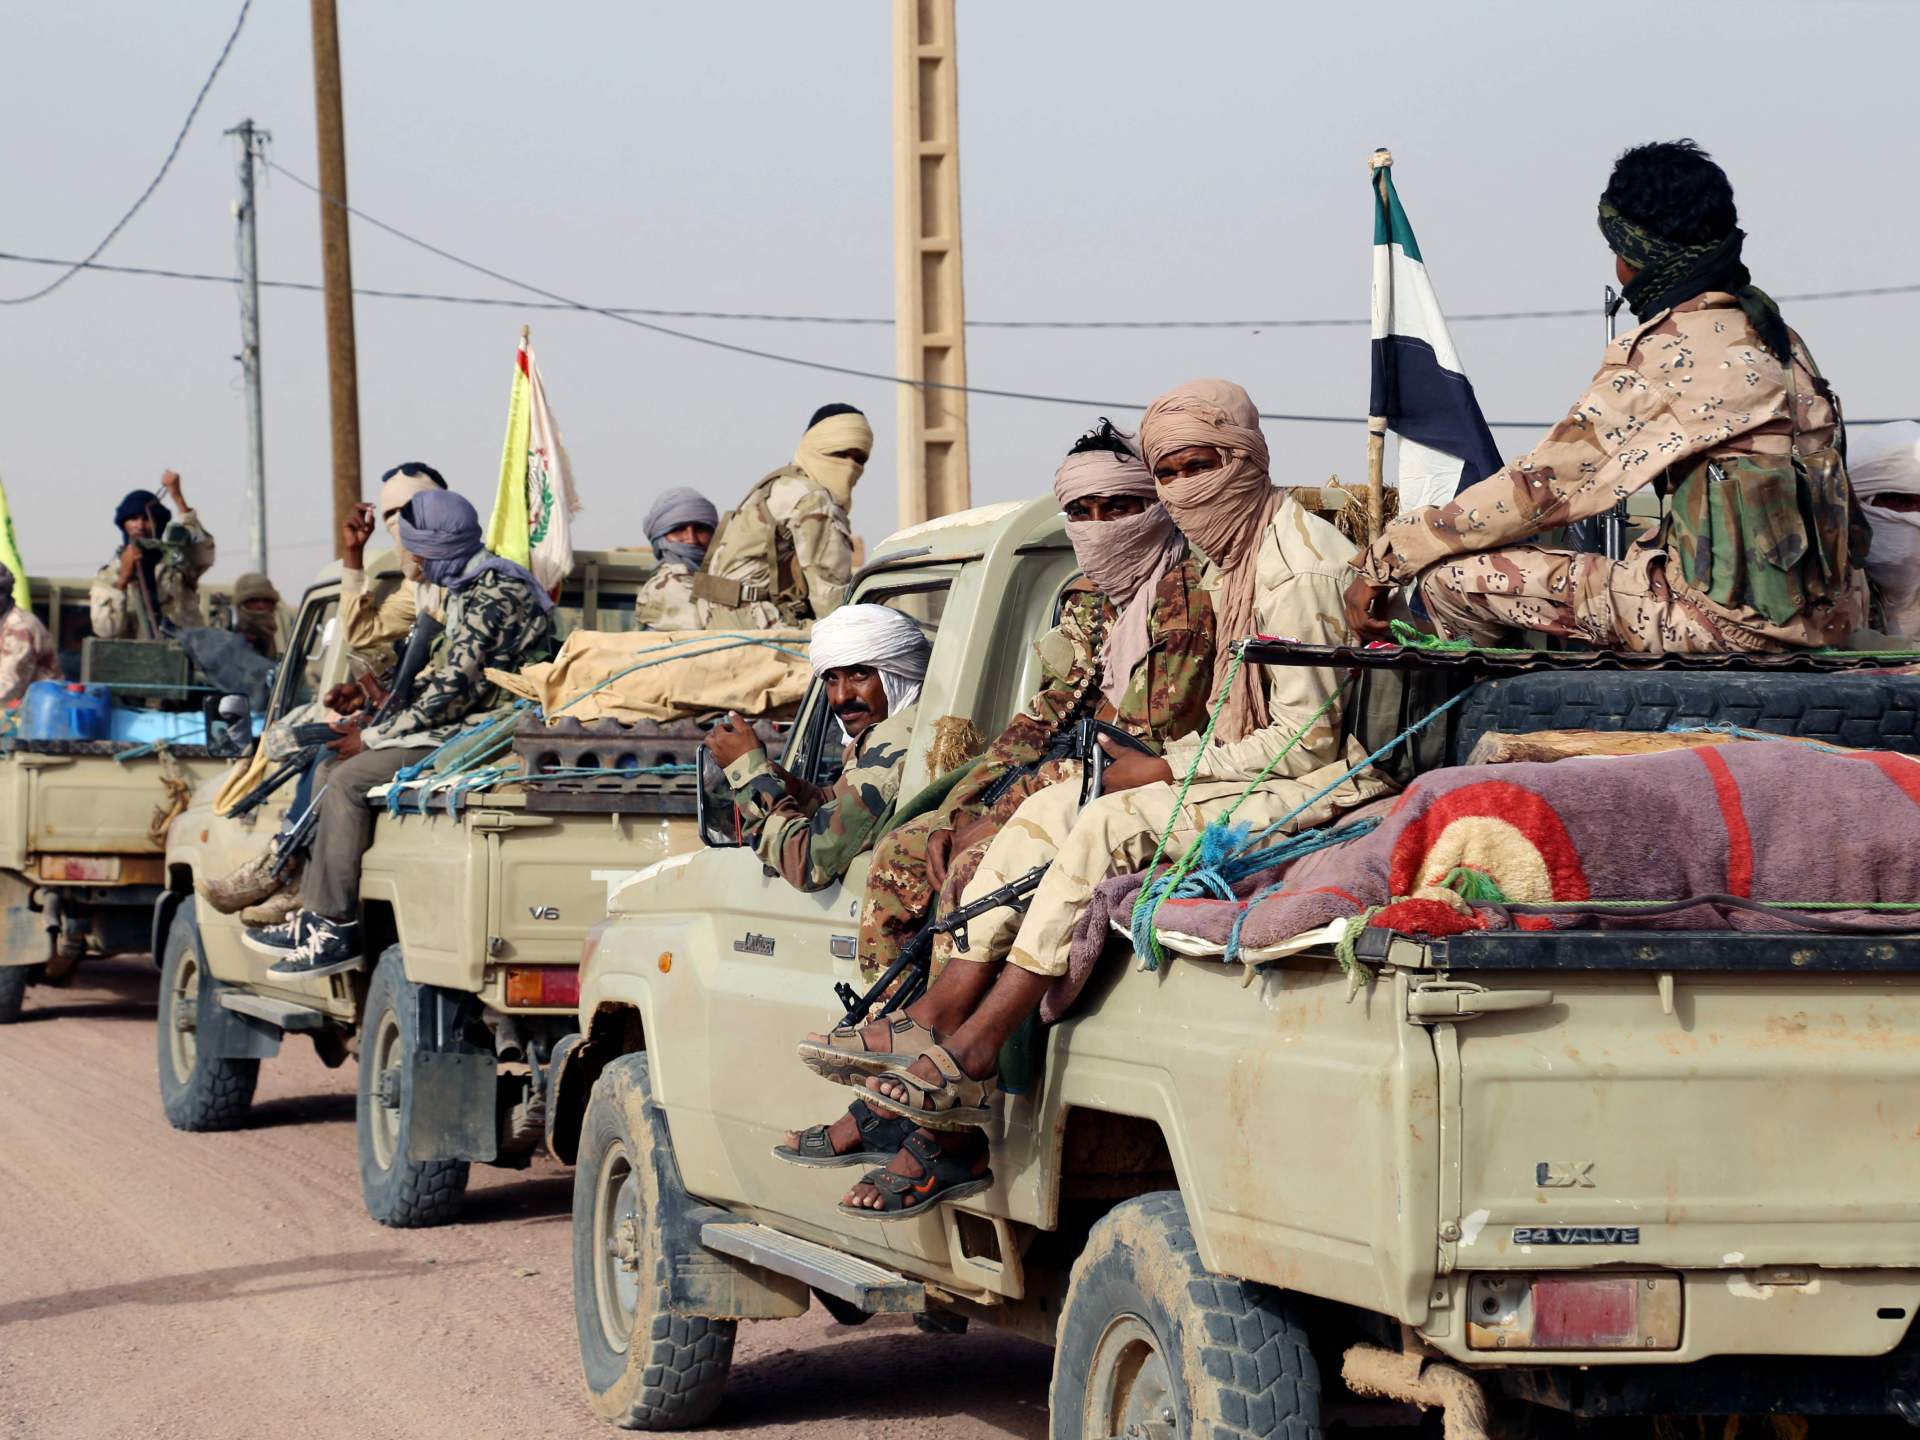 المجلس العسكري في مالي ينهي اتفاقا للسلام مع الانفصاليين | أخبار – البوكس نيوز